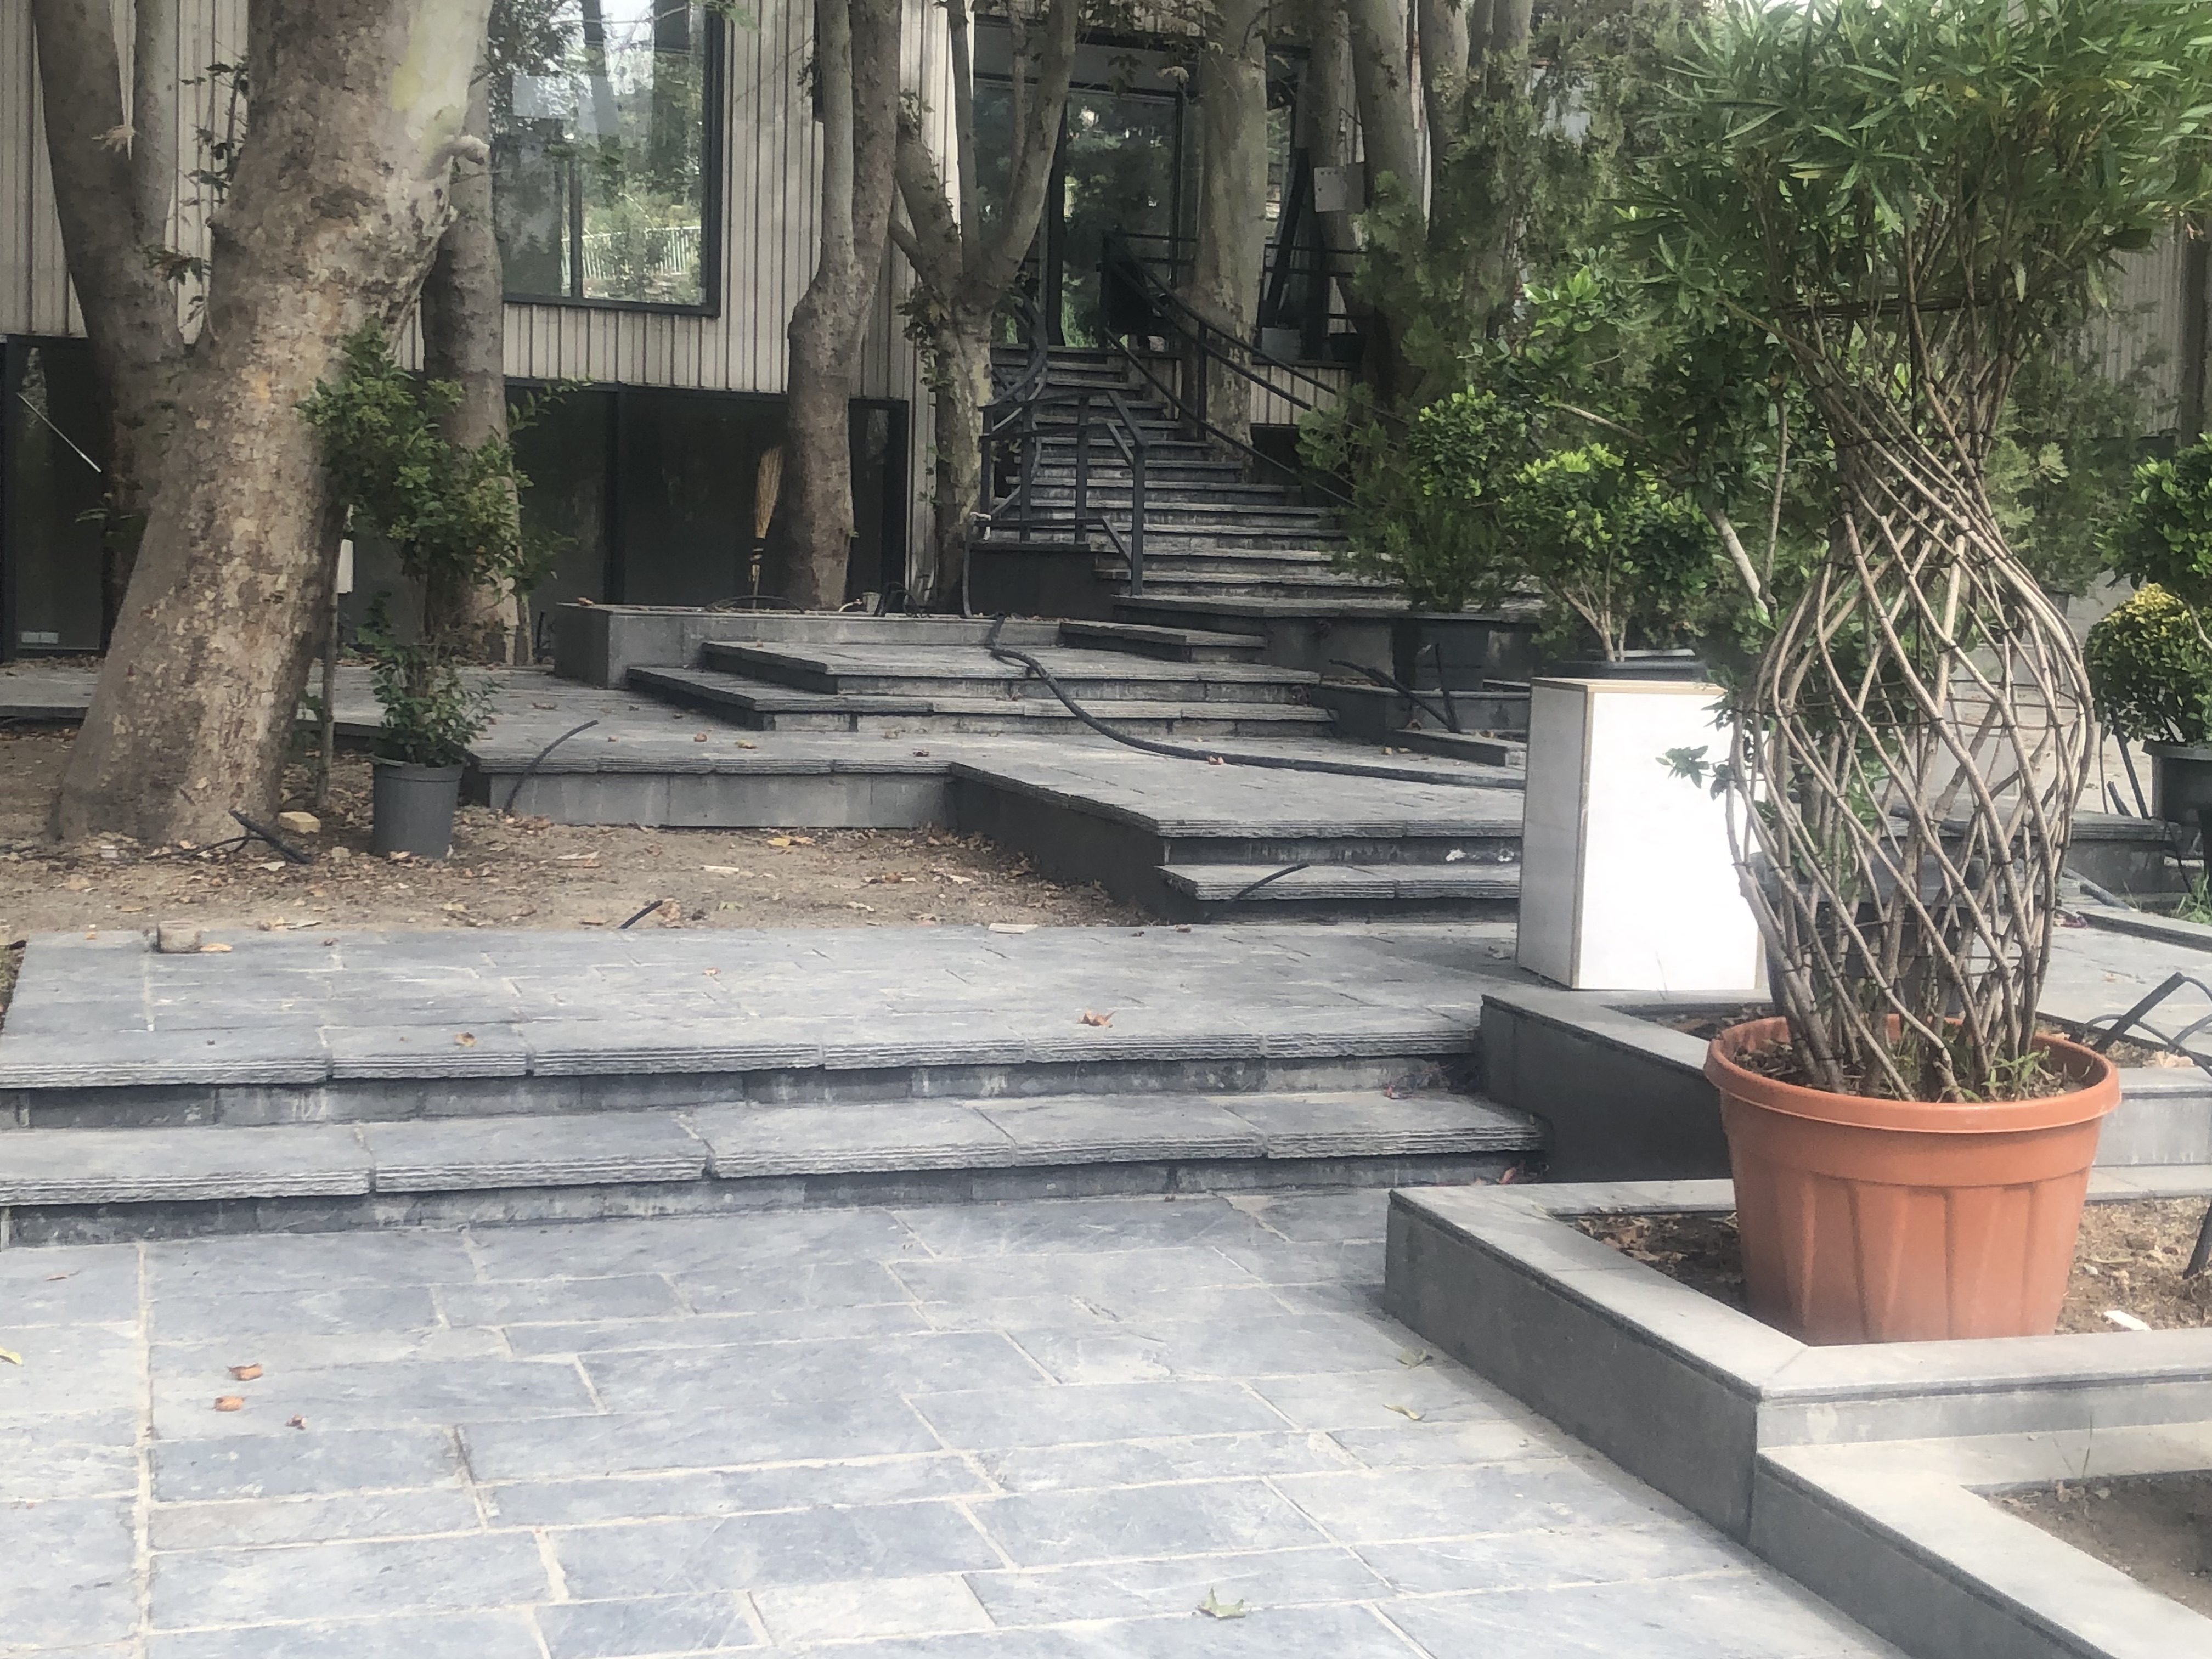 اجرای سنگ لاشه و اجرای سنگ مالون برای کف و پله باغچه در هتل قصر روز نصب و اجرا می شود